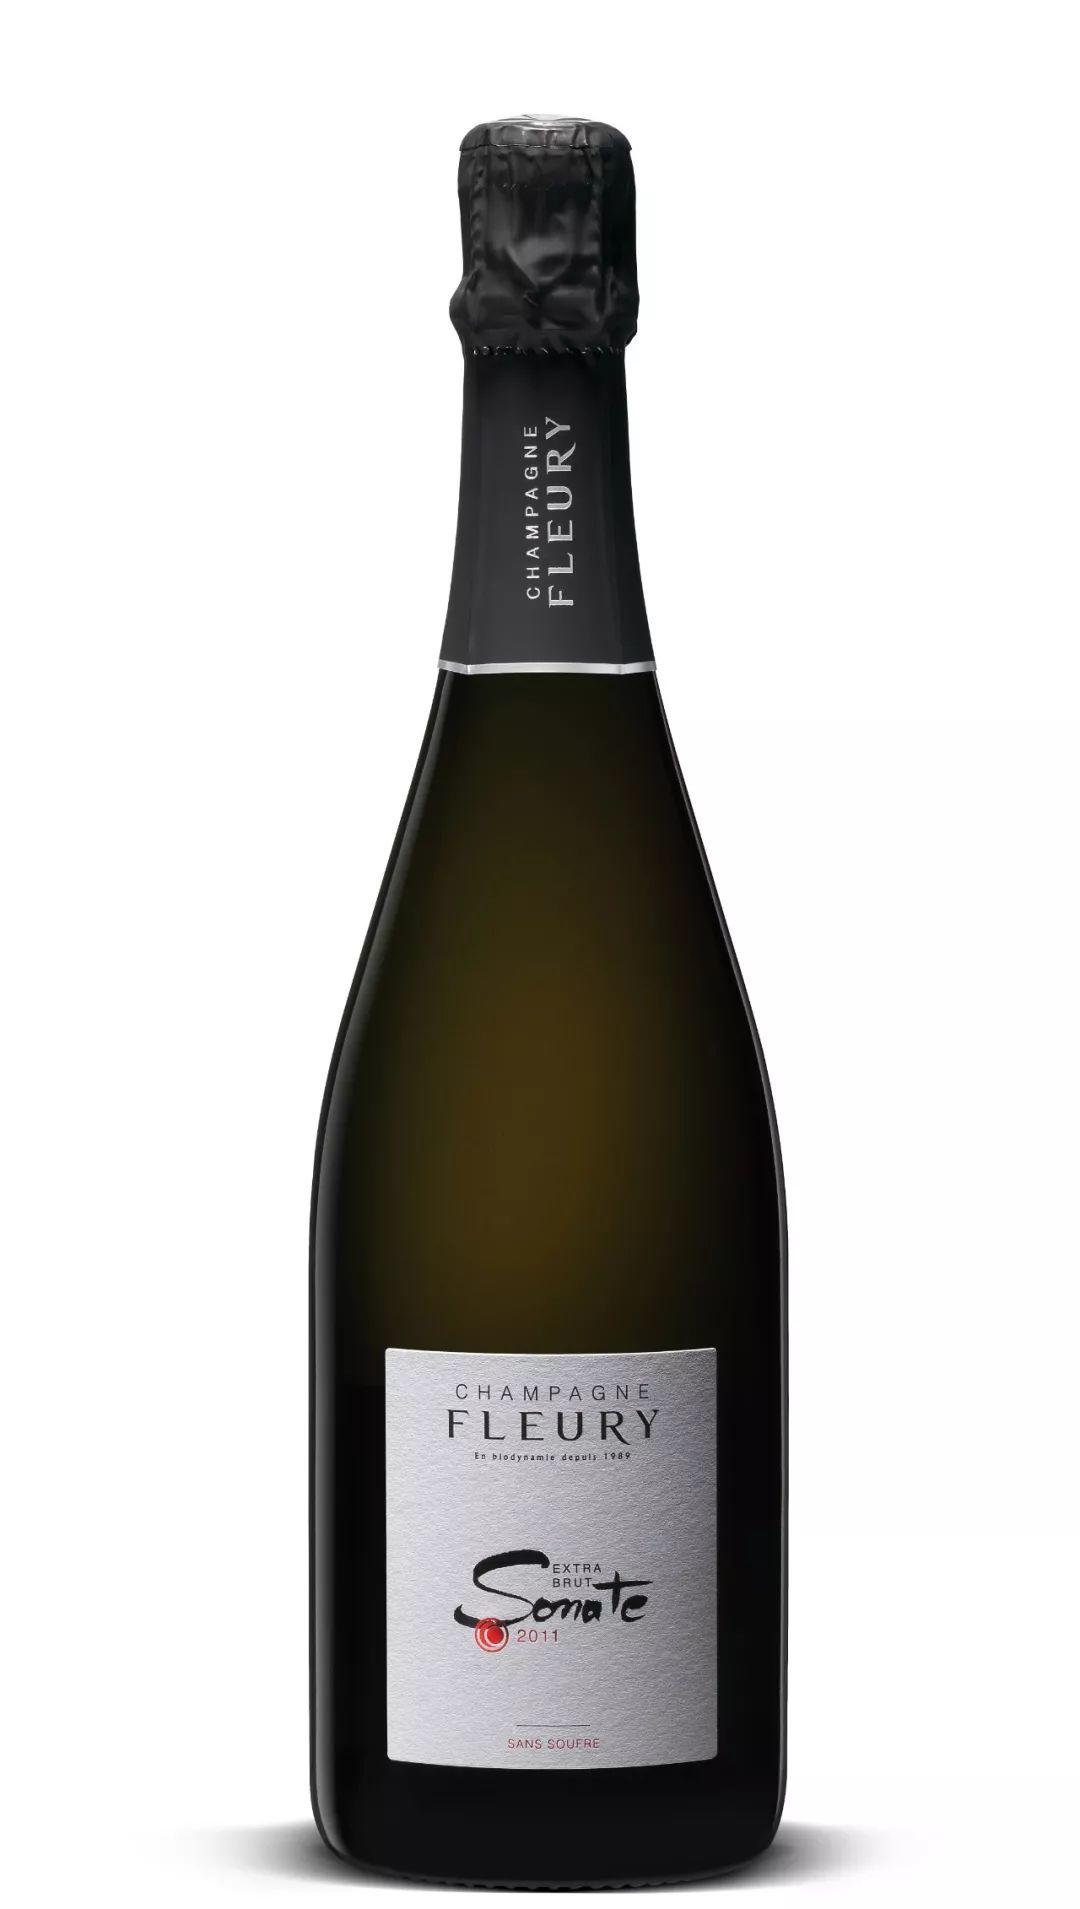 2019 展商介绍 | 芙乐莉香槟 Champagne Fleury